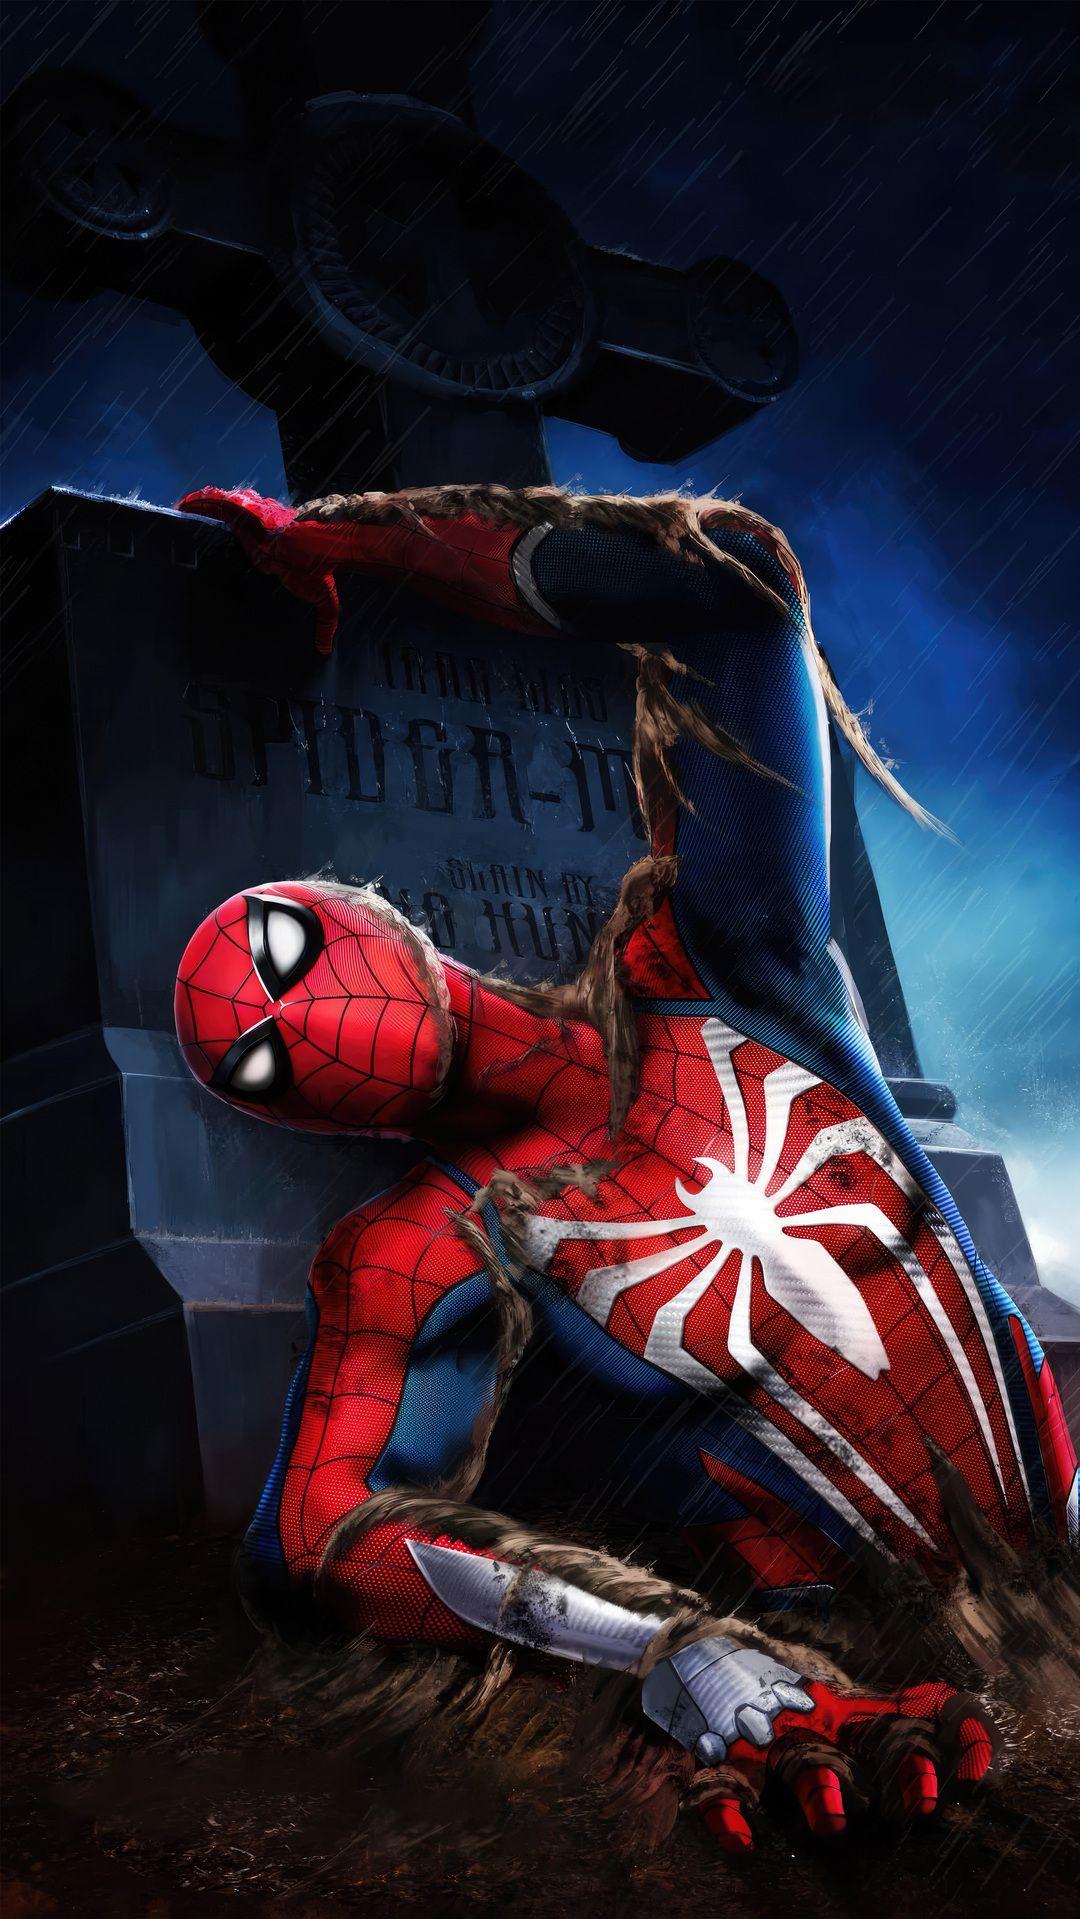 Spider Man Ps5 in Spider man Amazing spiderman movie